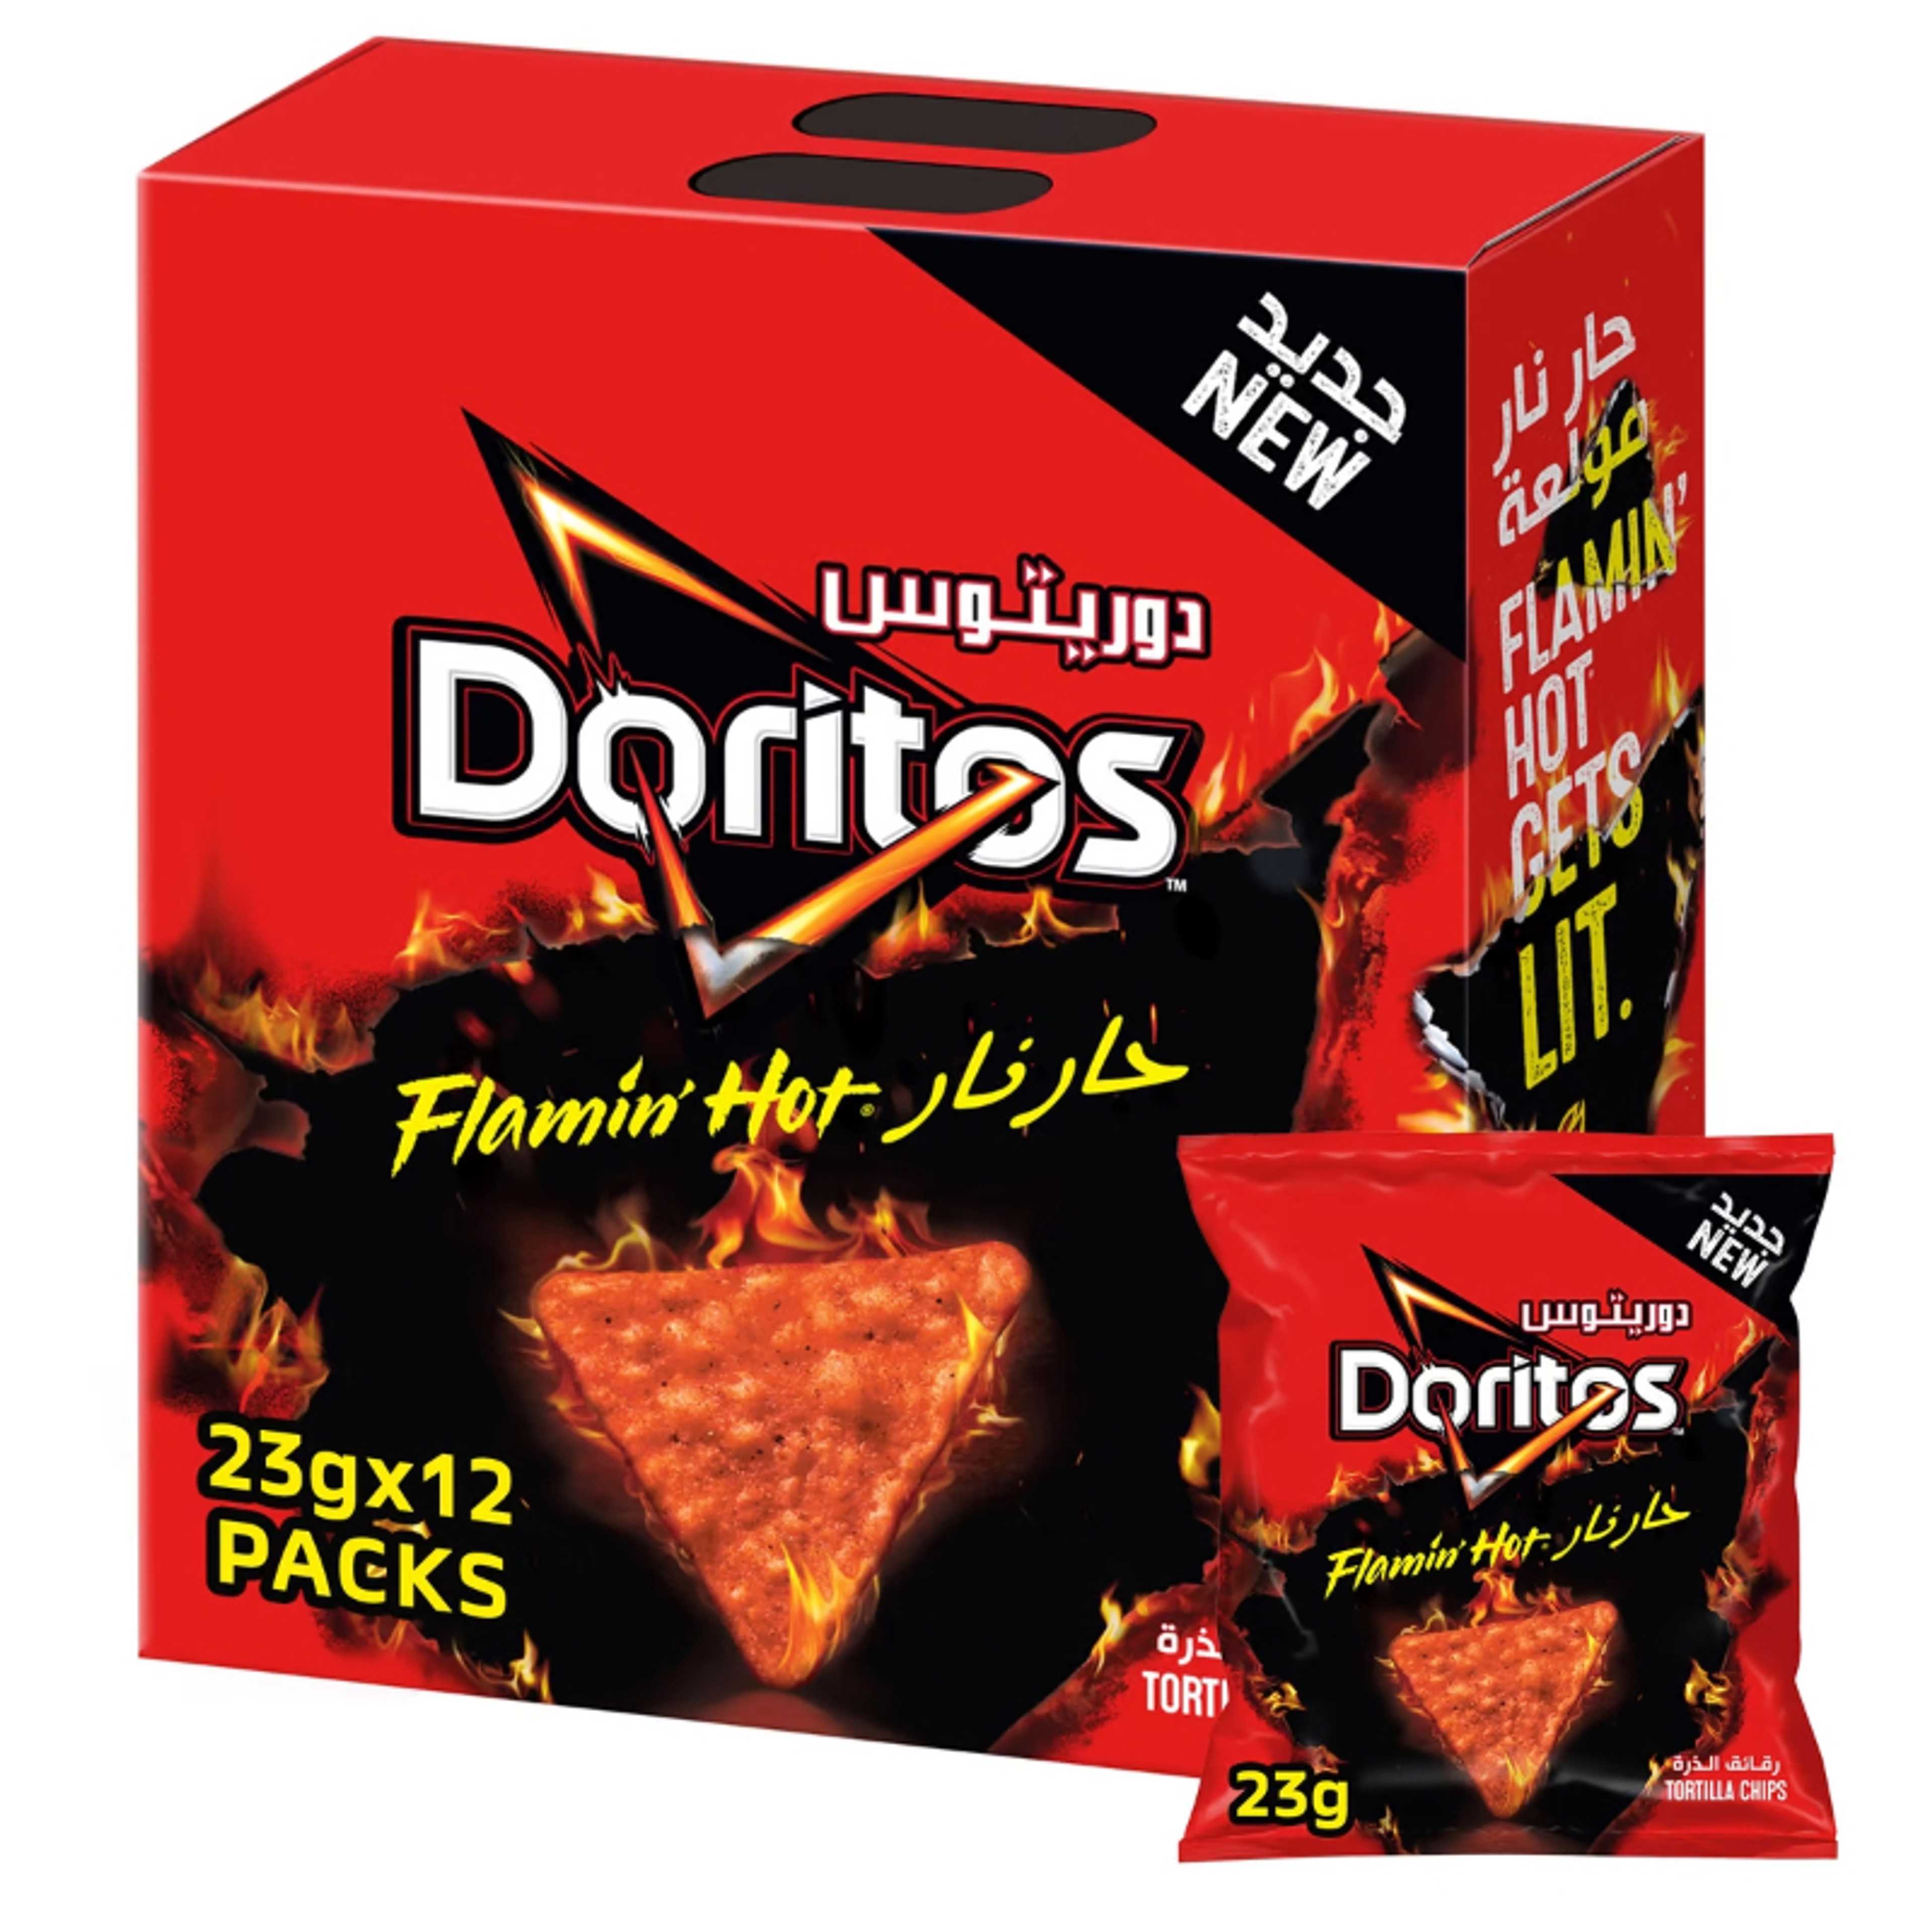 Doritos Tortilla Chips, Flaming Hot x 23gm x 12 Packets